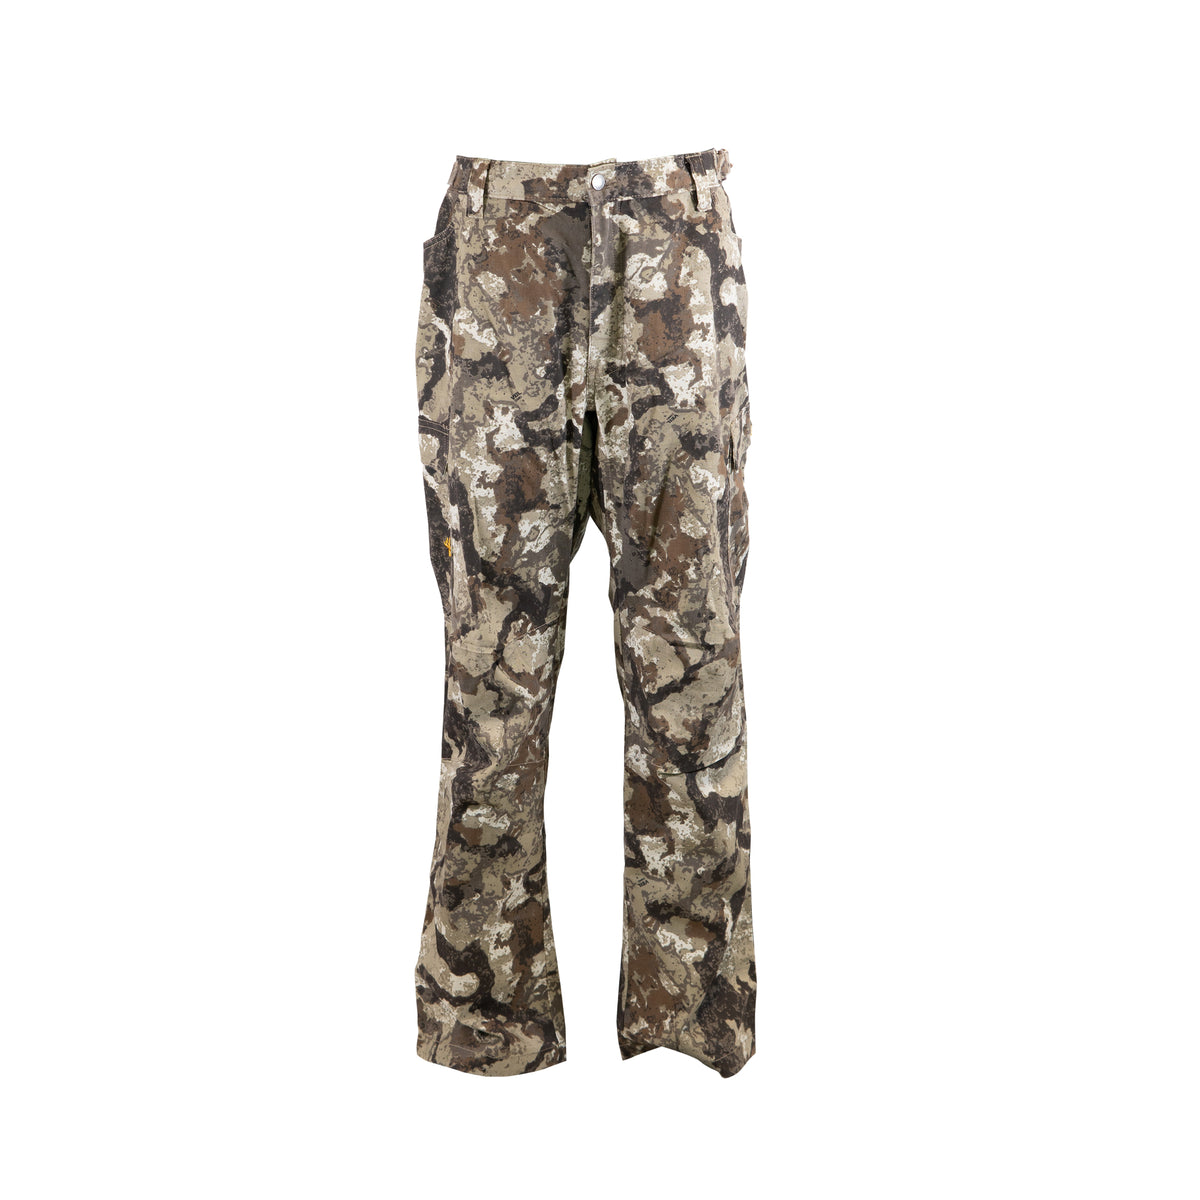 Realtree EDGE Camo, Big and Tall 6-Pocket Pants